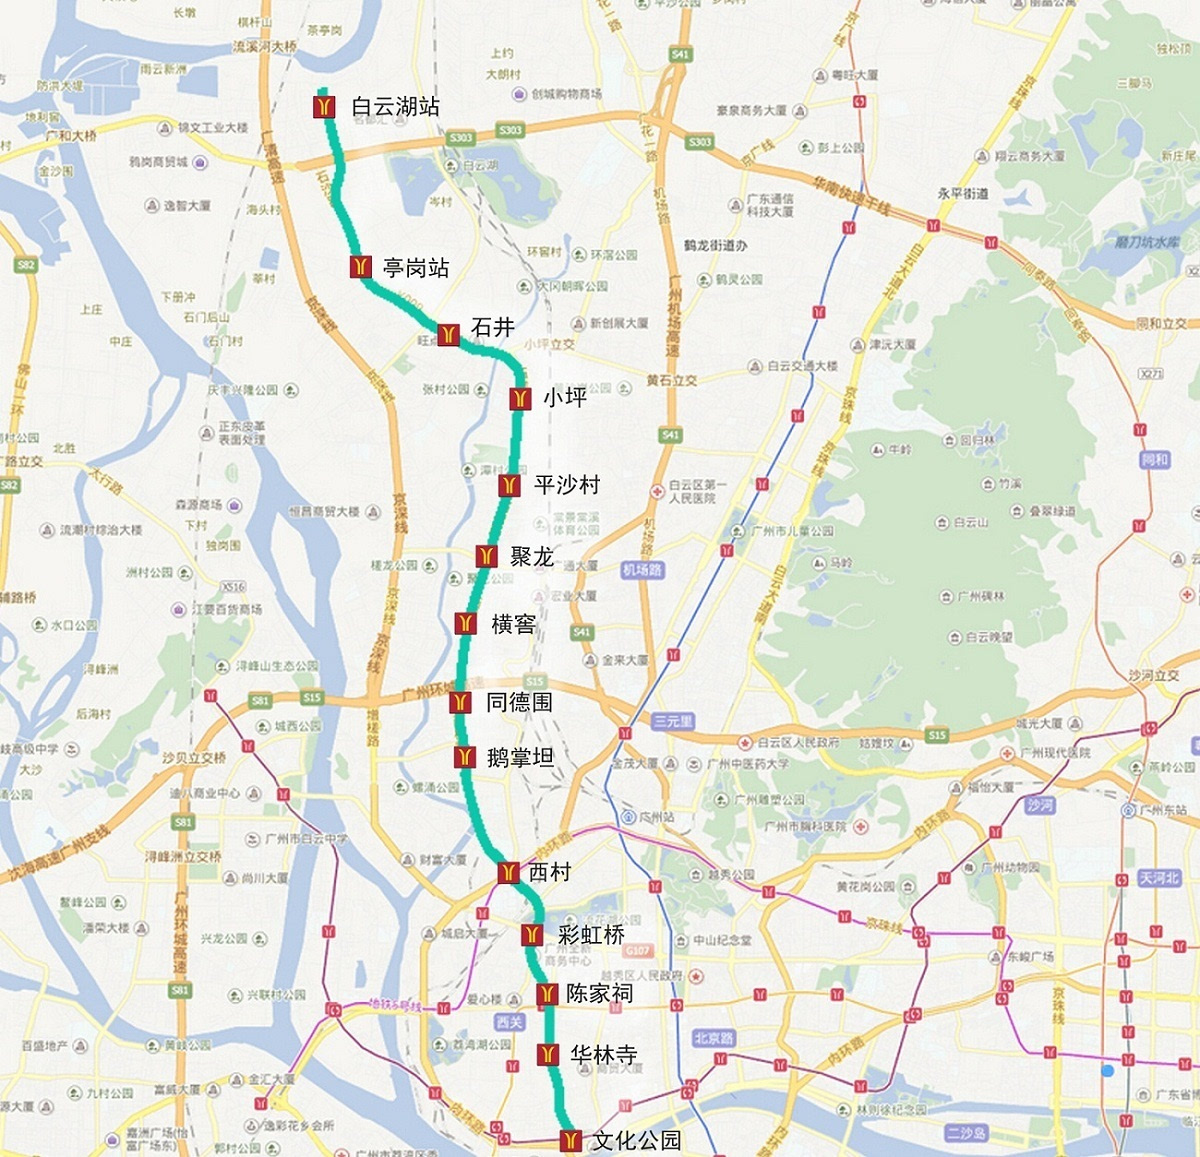 搜狐公众平台 - 地铁八号线北延段进度达34% 